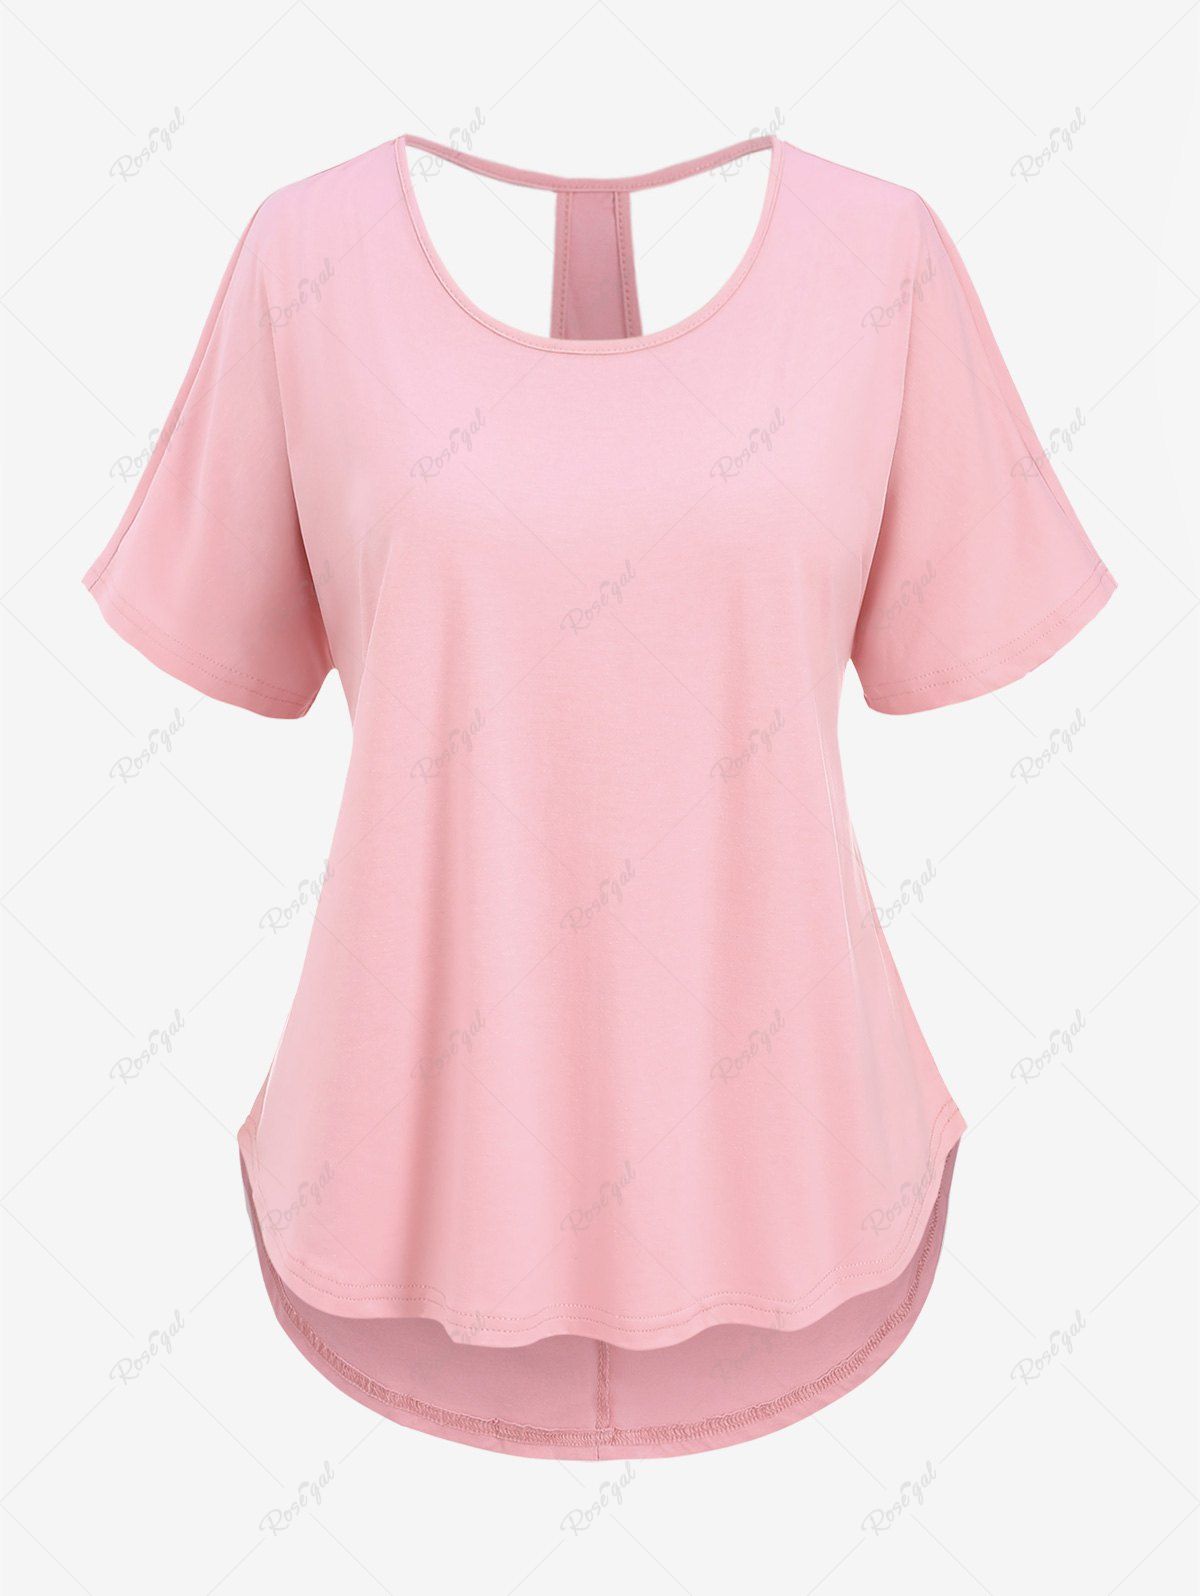 T-shirt Evidé Au Dos en Couleur Unie de Grande Taille Rose clair 2XL